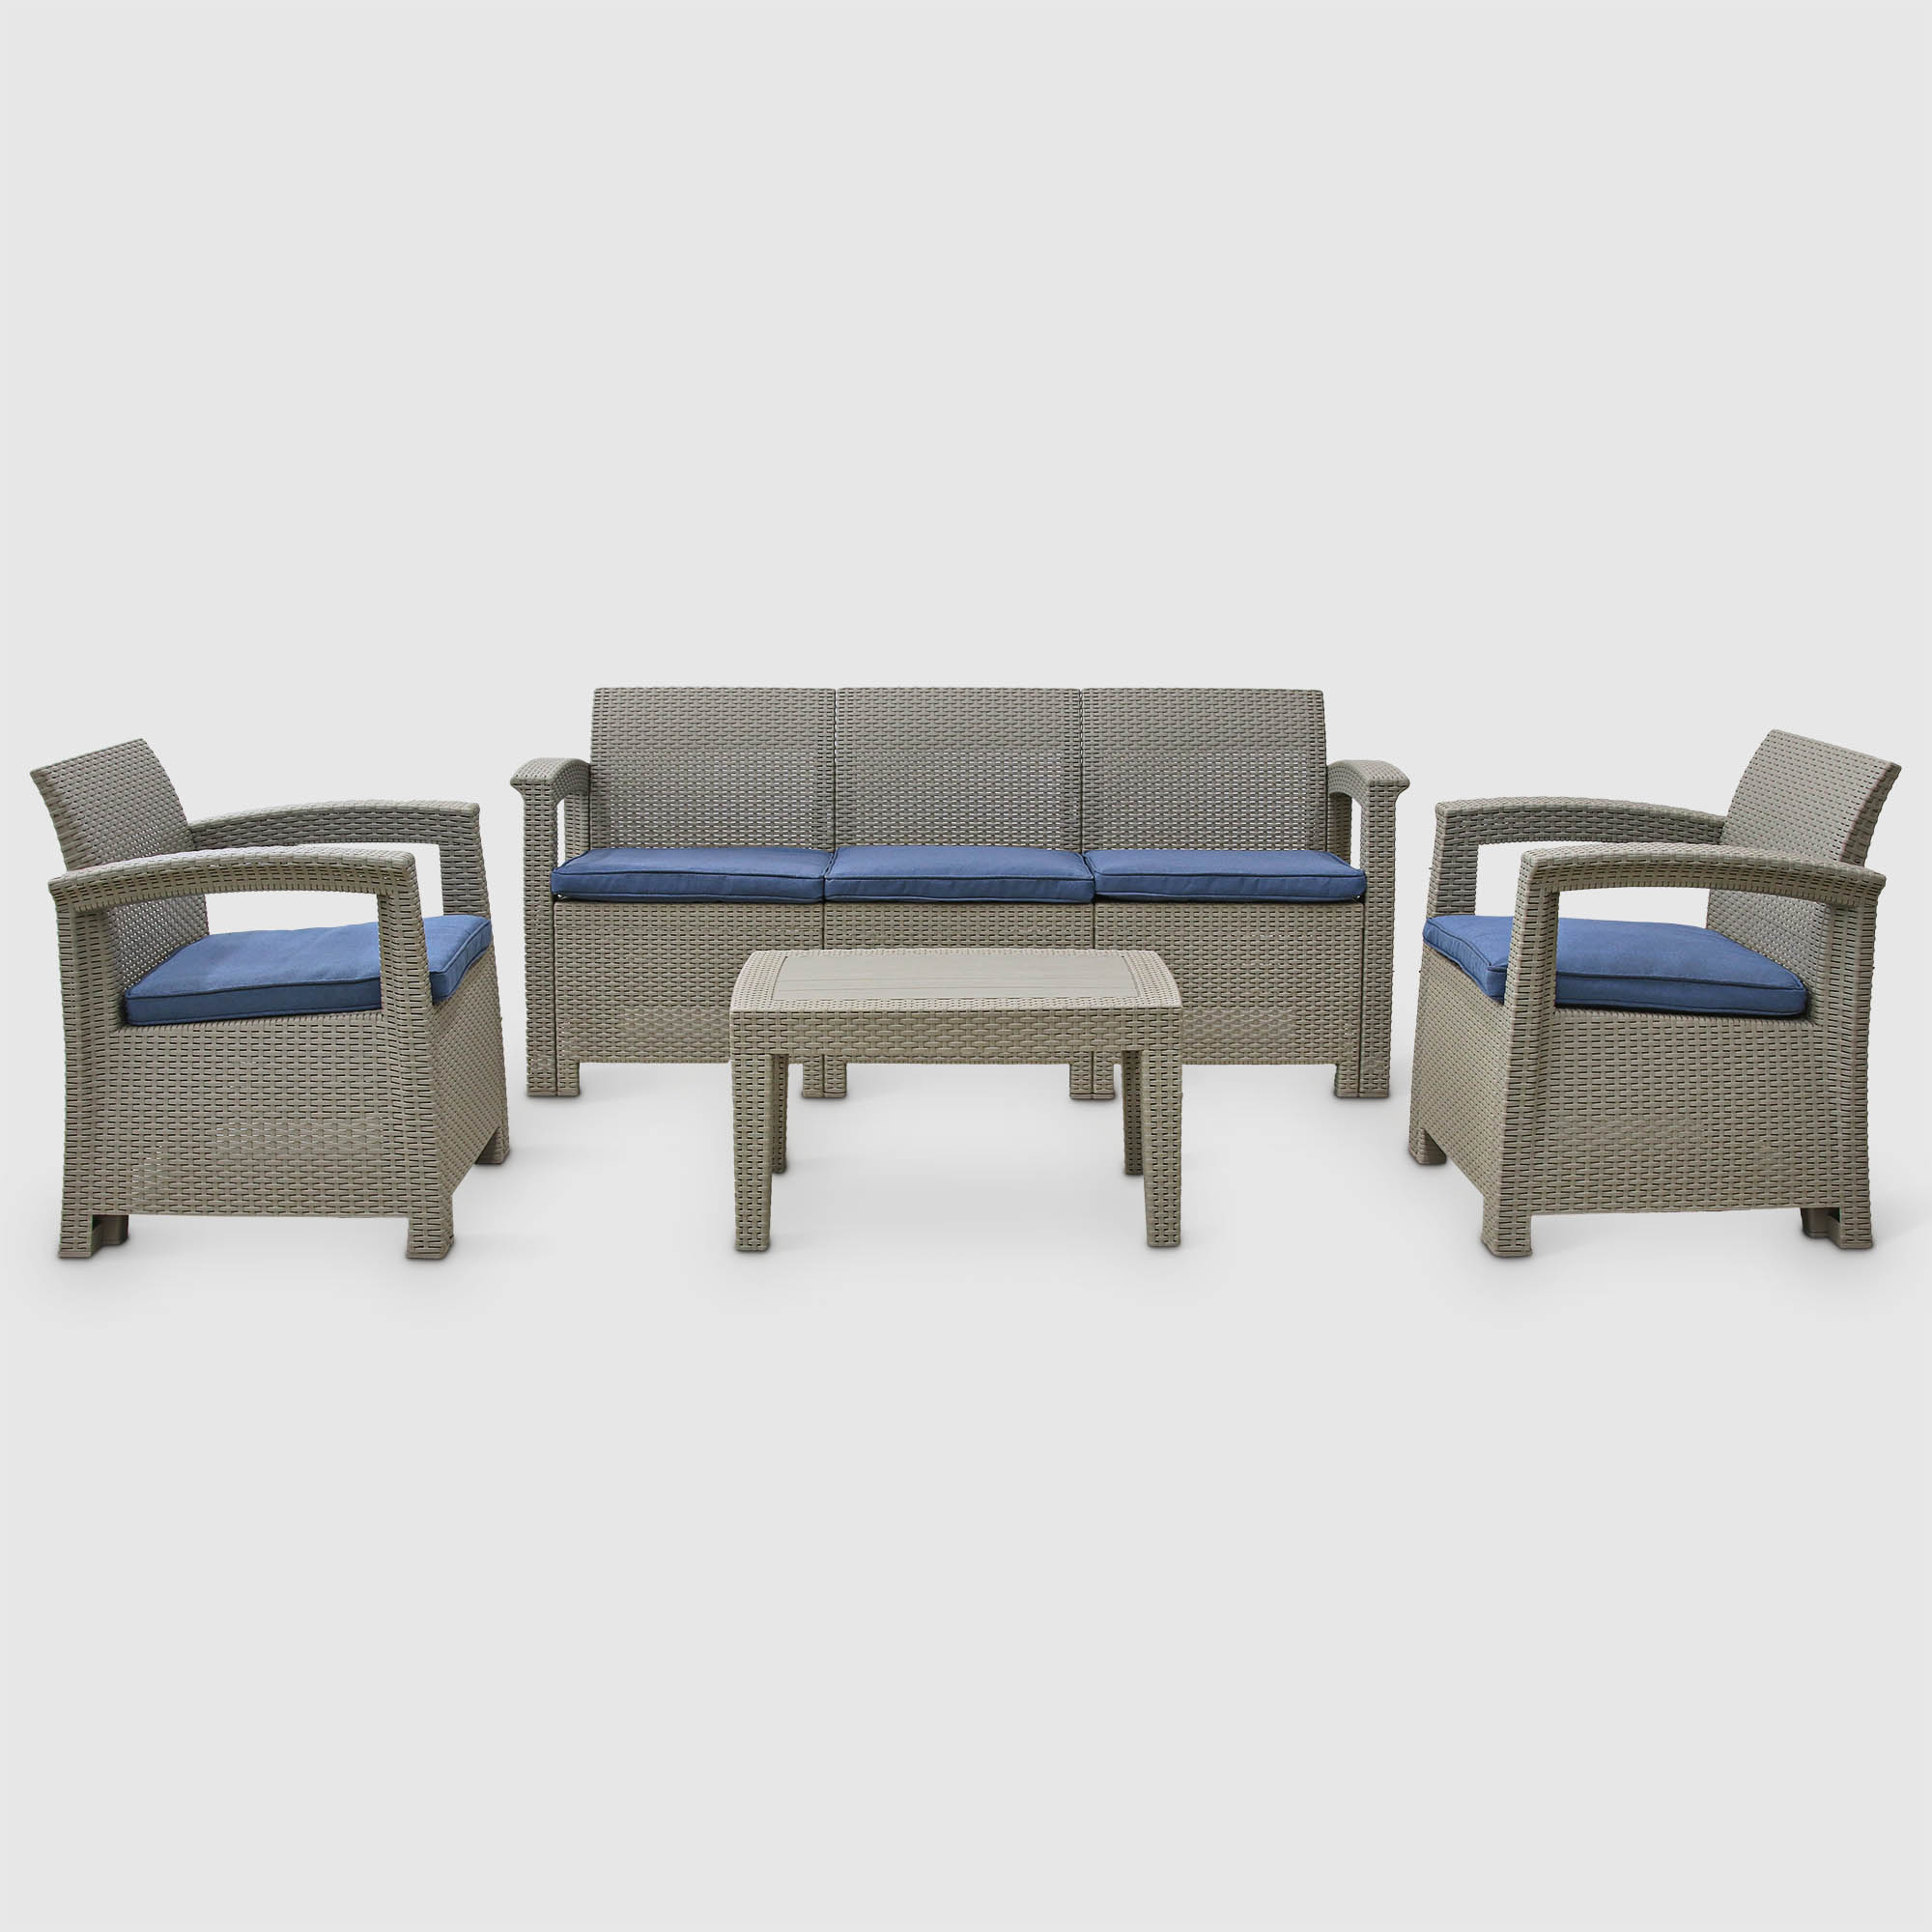 Комплект садовой мебели LF бежевый с синим из 4 предметов комплект садовой мебели mandella zeugma defne бежевый из 5 предметов